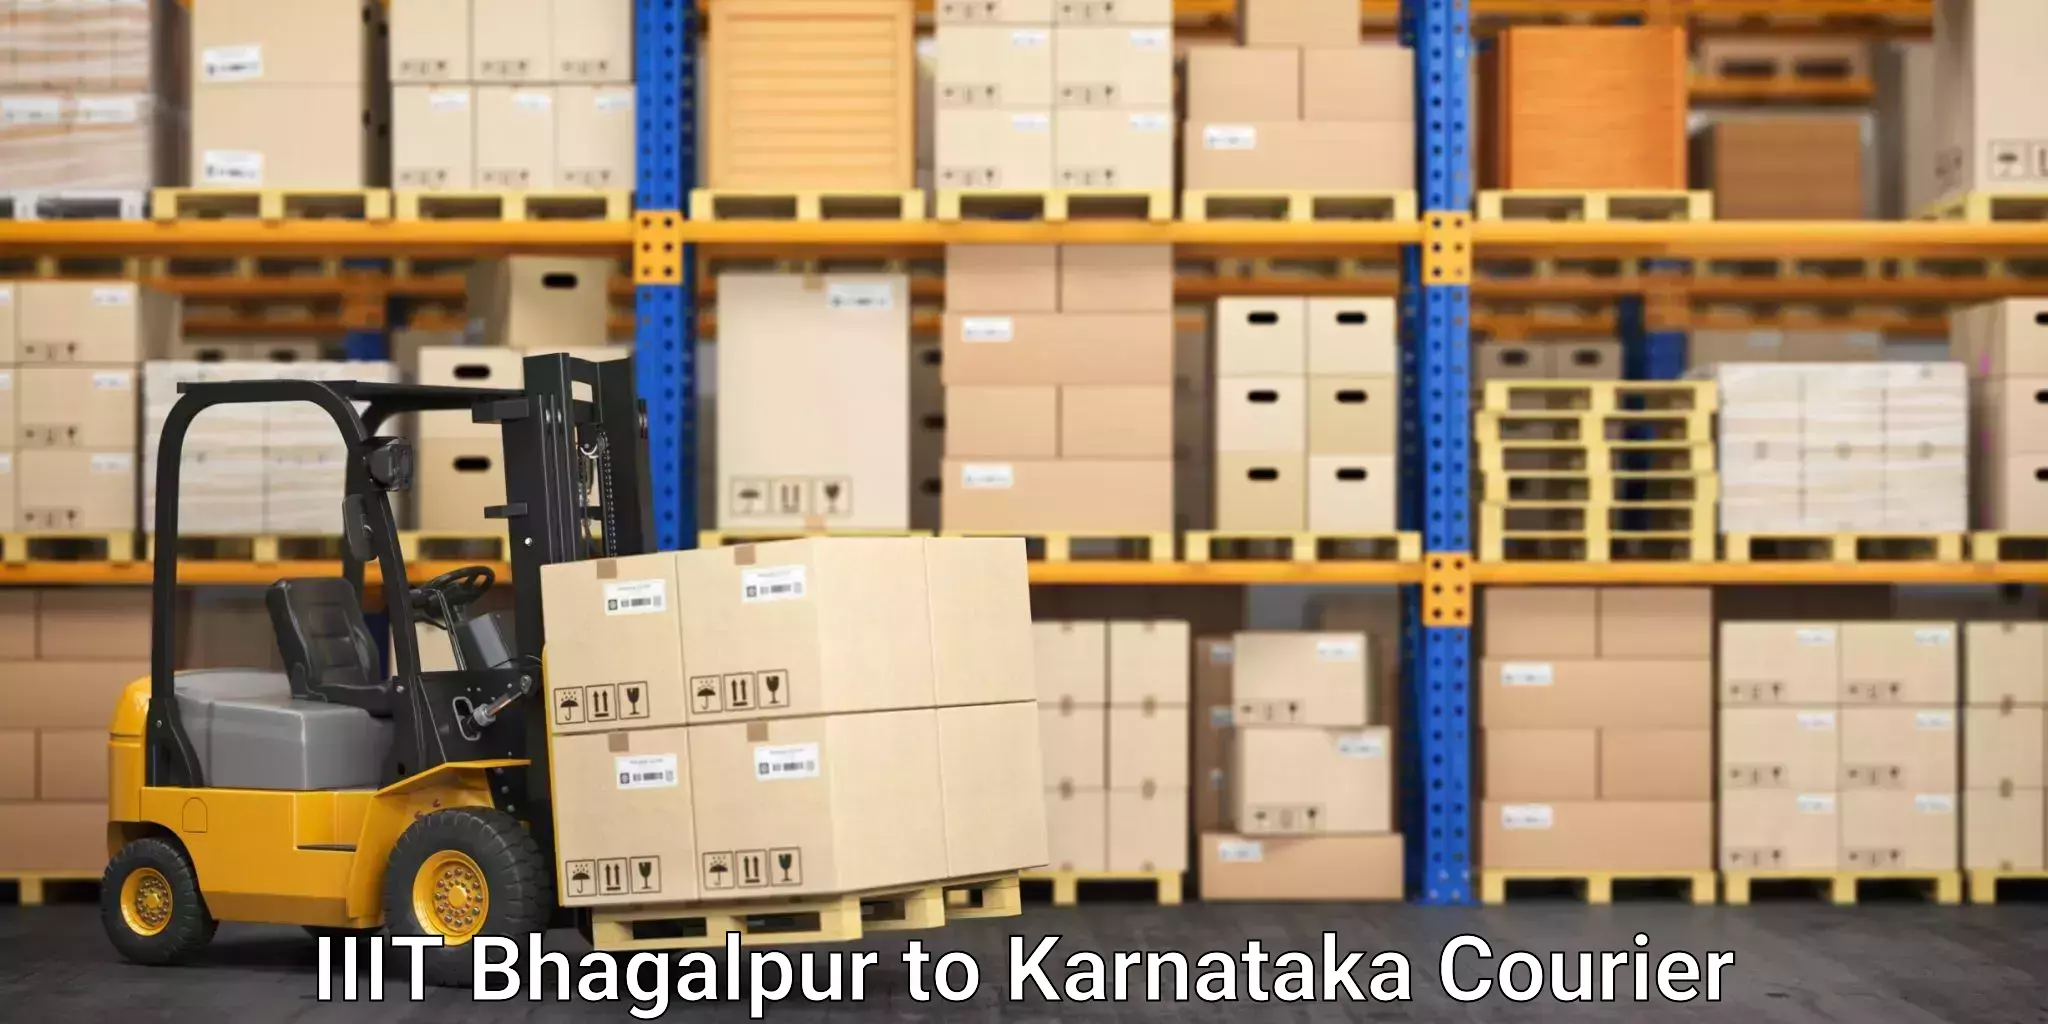 Skilled furniture movers IIIT Bhagalpur to Kanjarakatte